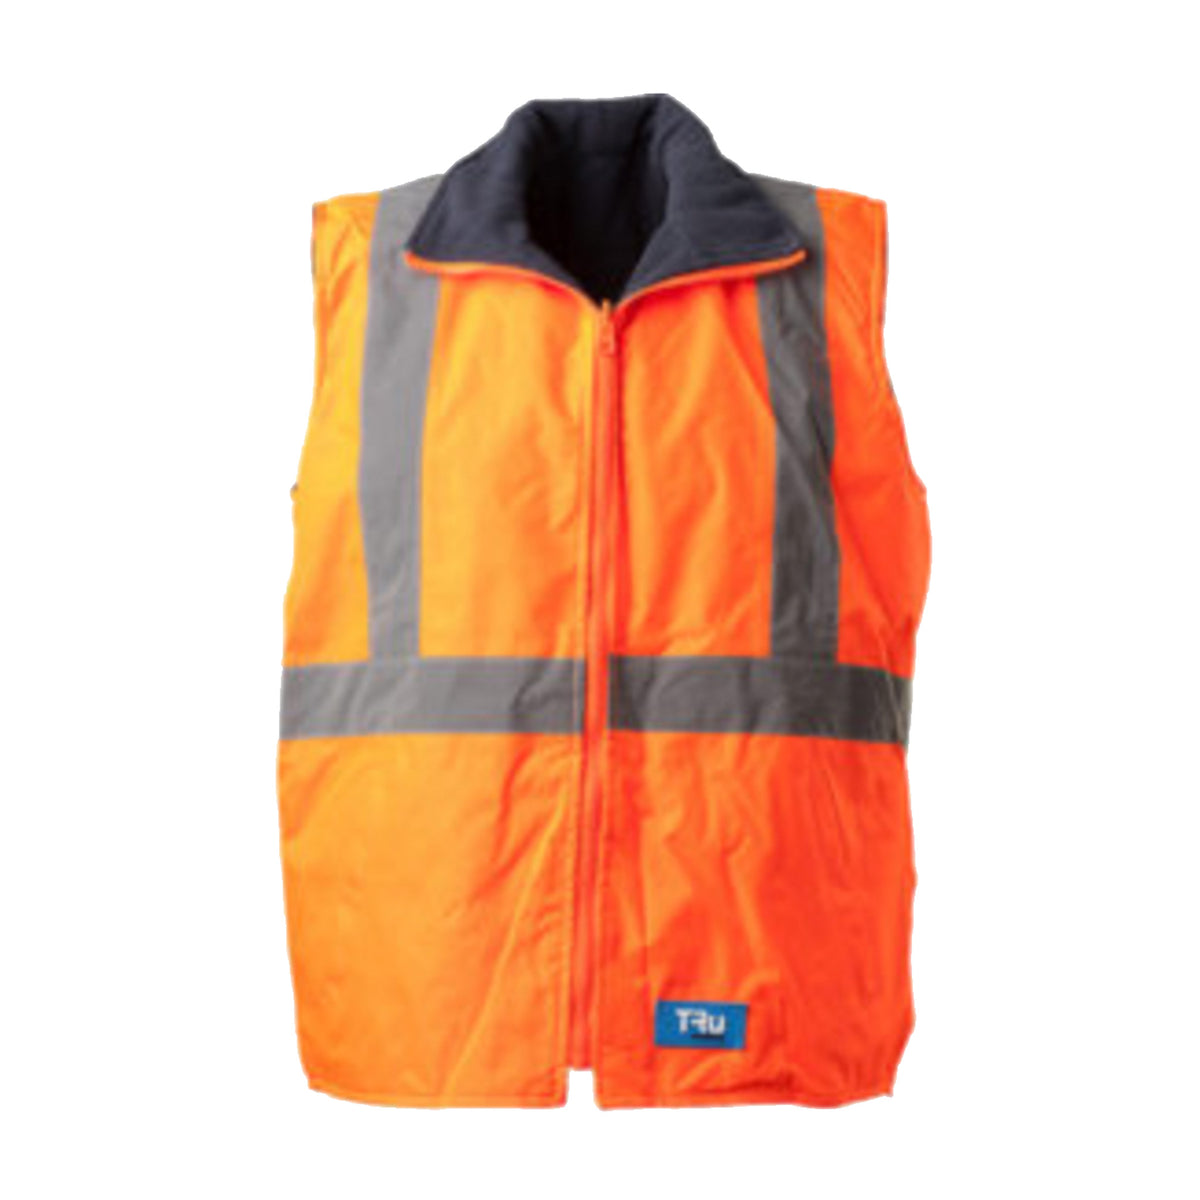 wet weather reversible vest with tru tape in orange